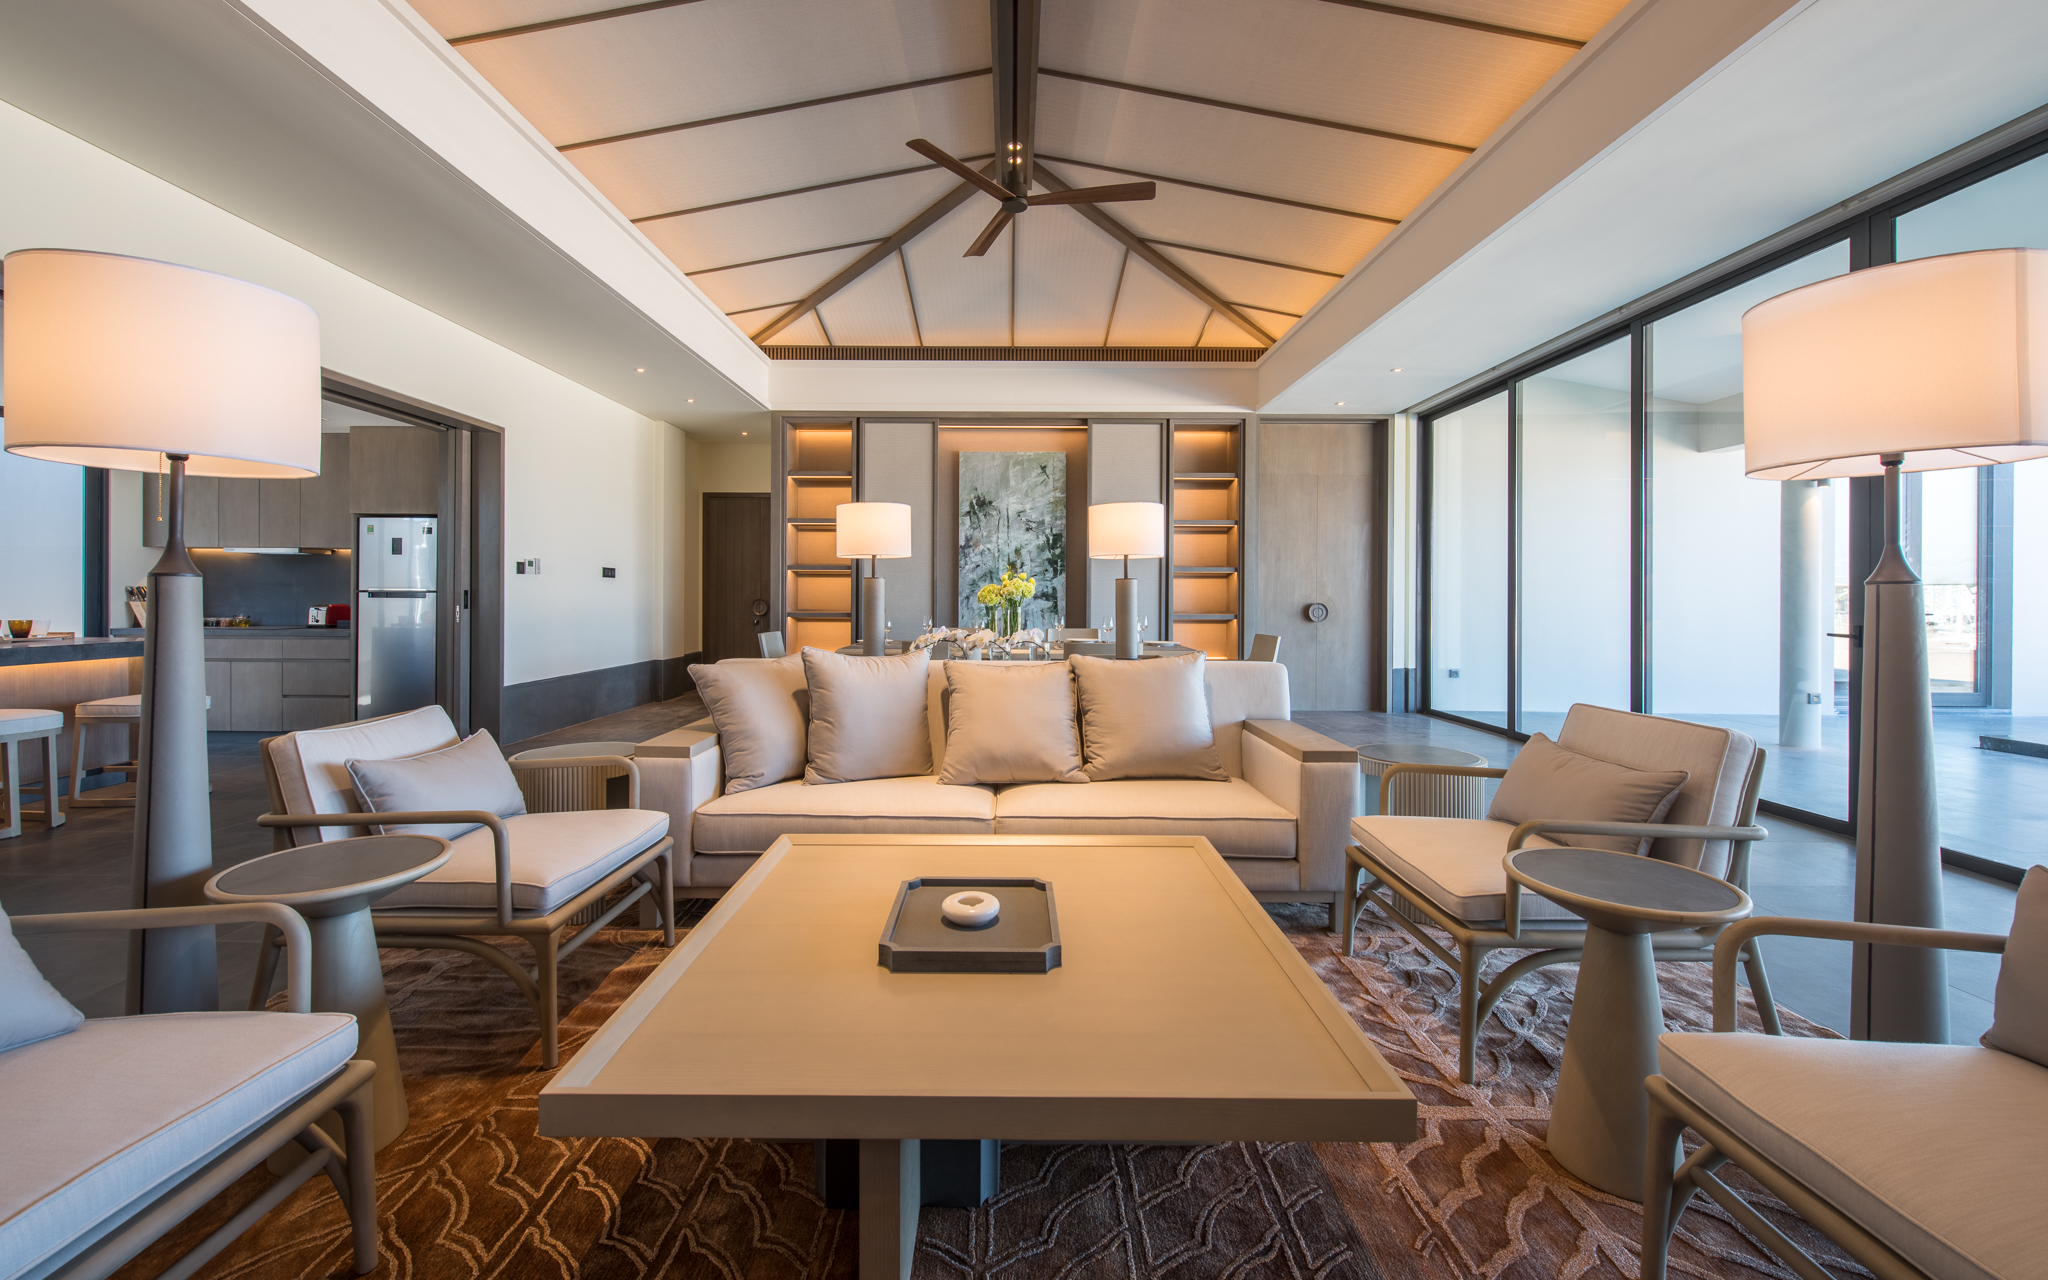 Khu nghỉ dưỡng 6 sao đầu tiên tại đảo Ngọc – Regent Residences Phu Quoc chắc chắn sẽ là phi vụ hấp dẫn của các nhà đầu tư sáng suốt.  - img_201805310835170391 - Regent Residences Phu Quoc &#8211; Phi Vụ Triệu Đô